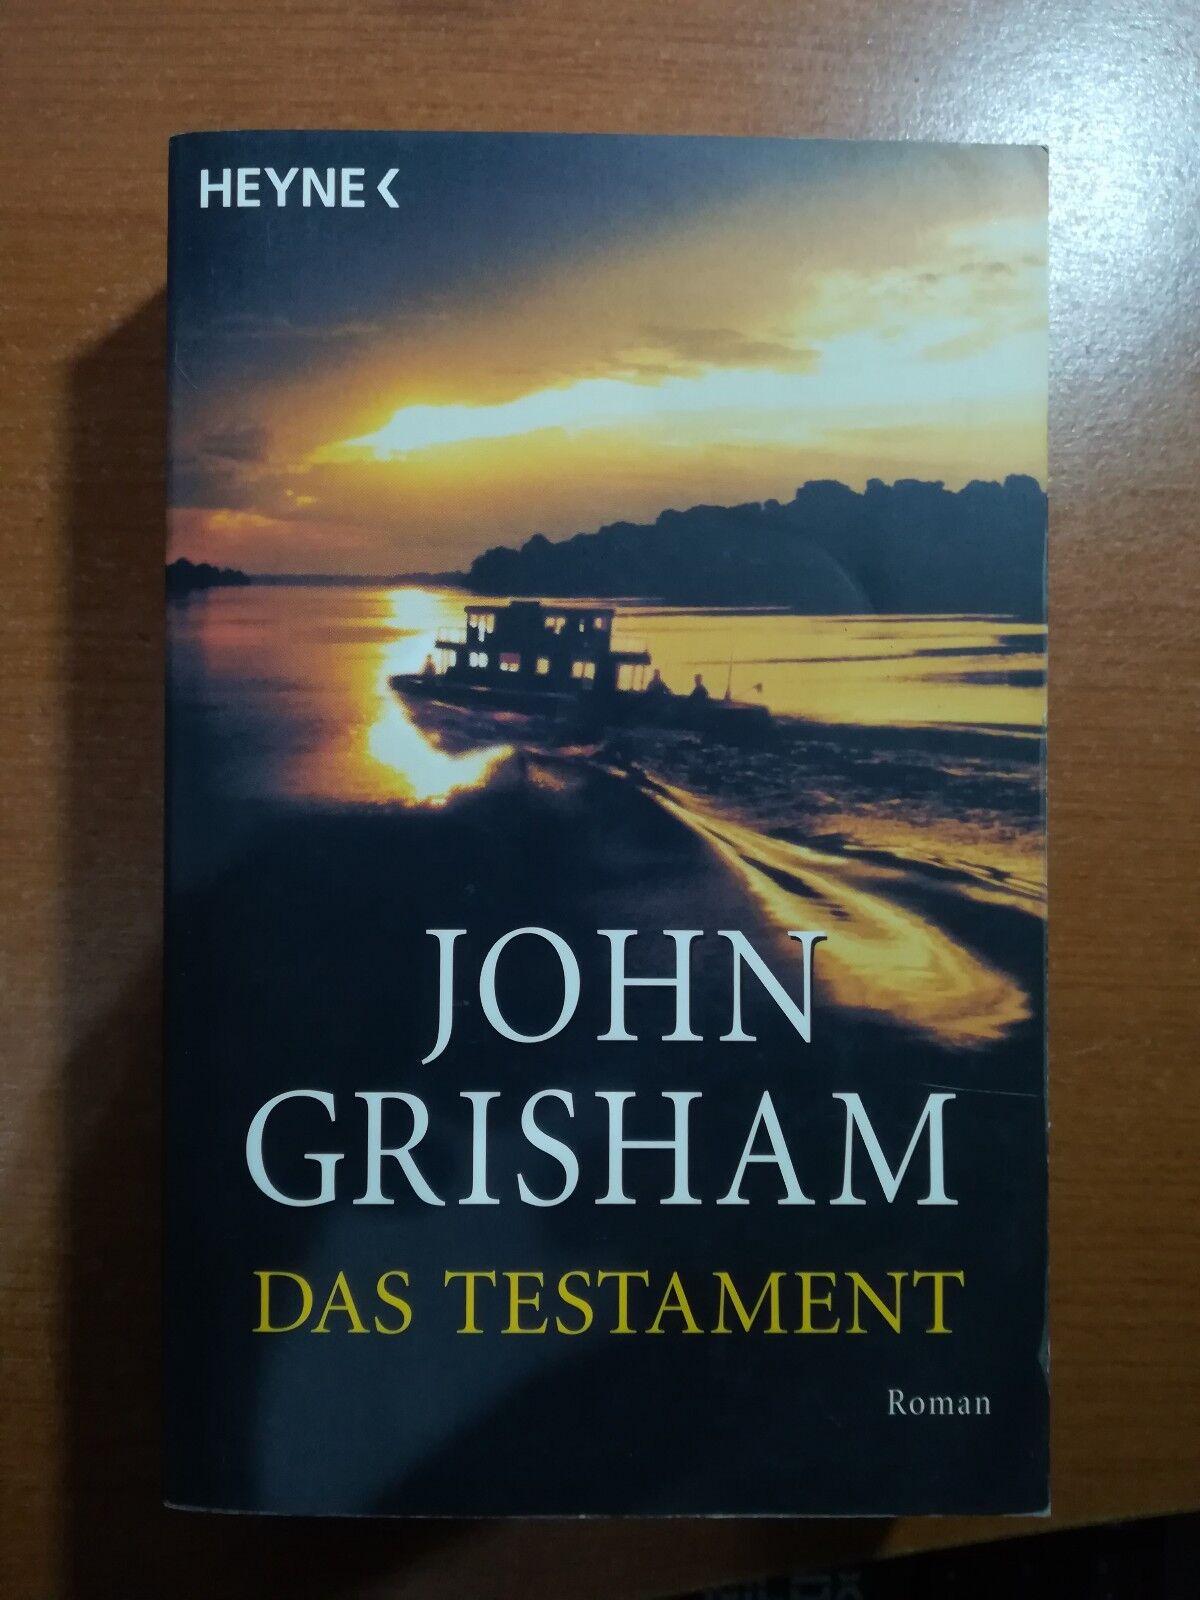 Das testament - John Grisham - Heyne - 2000 - M